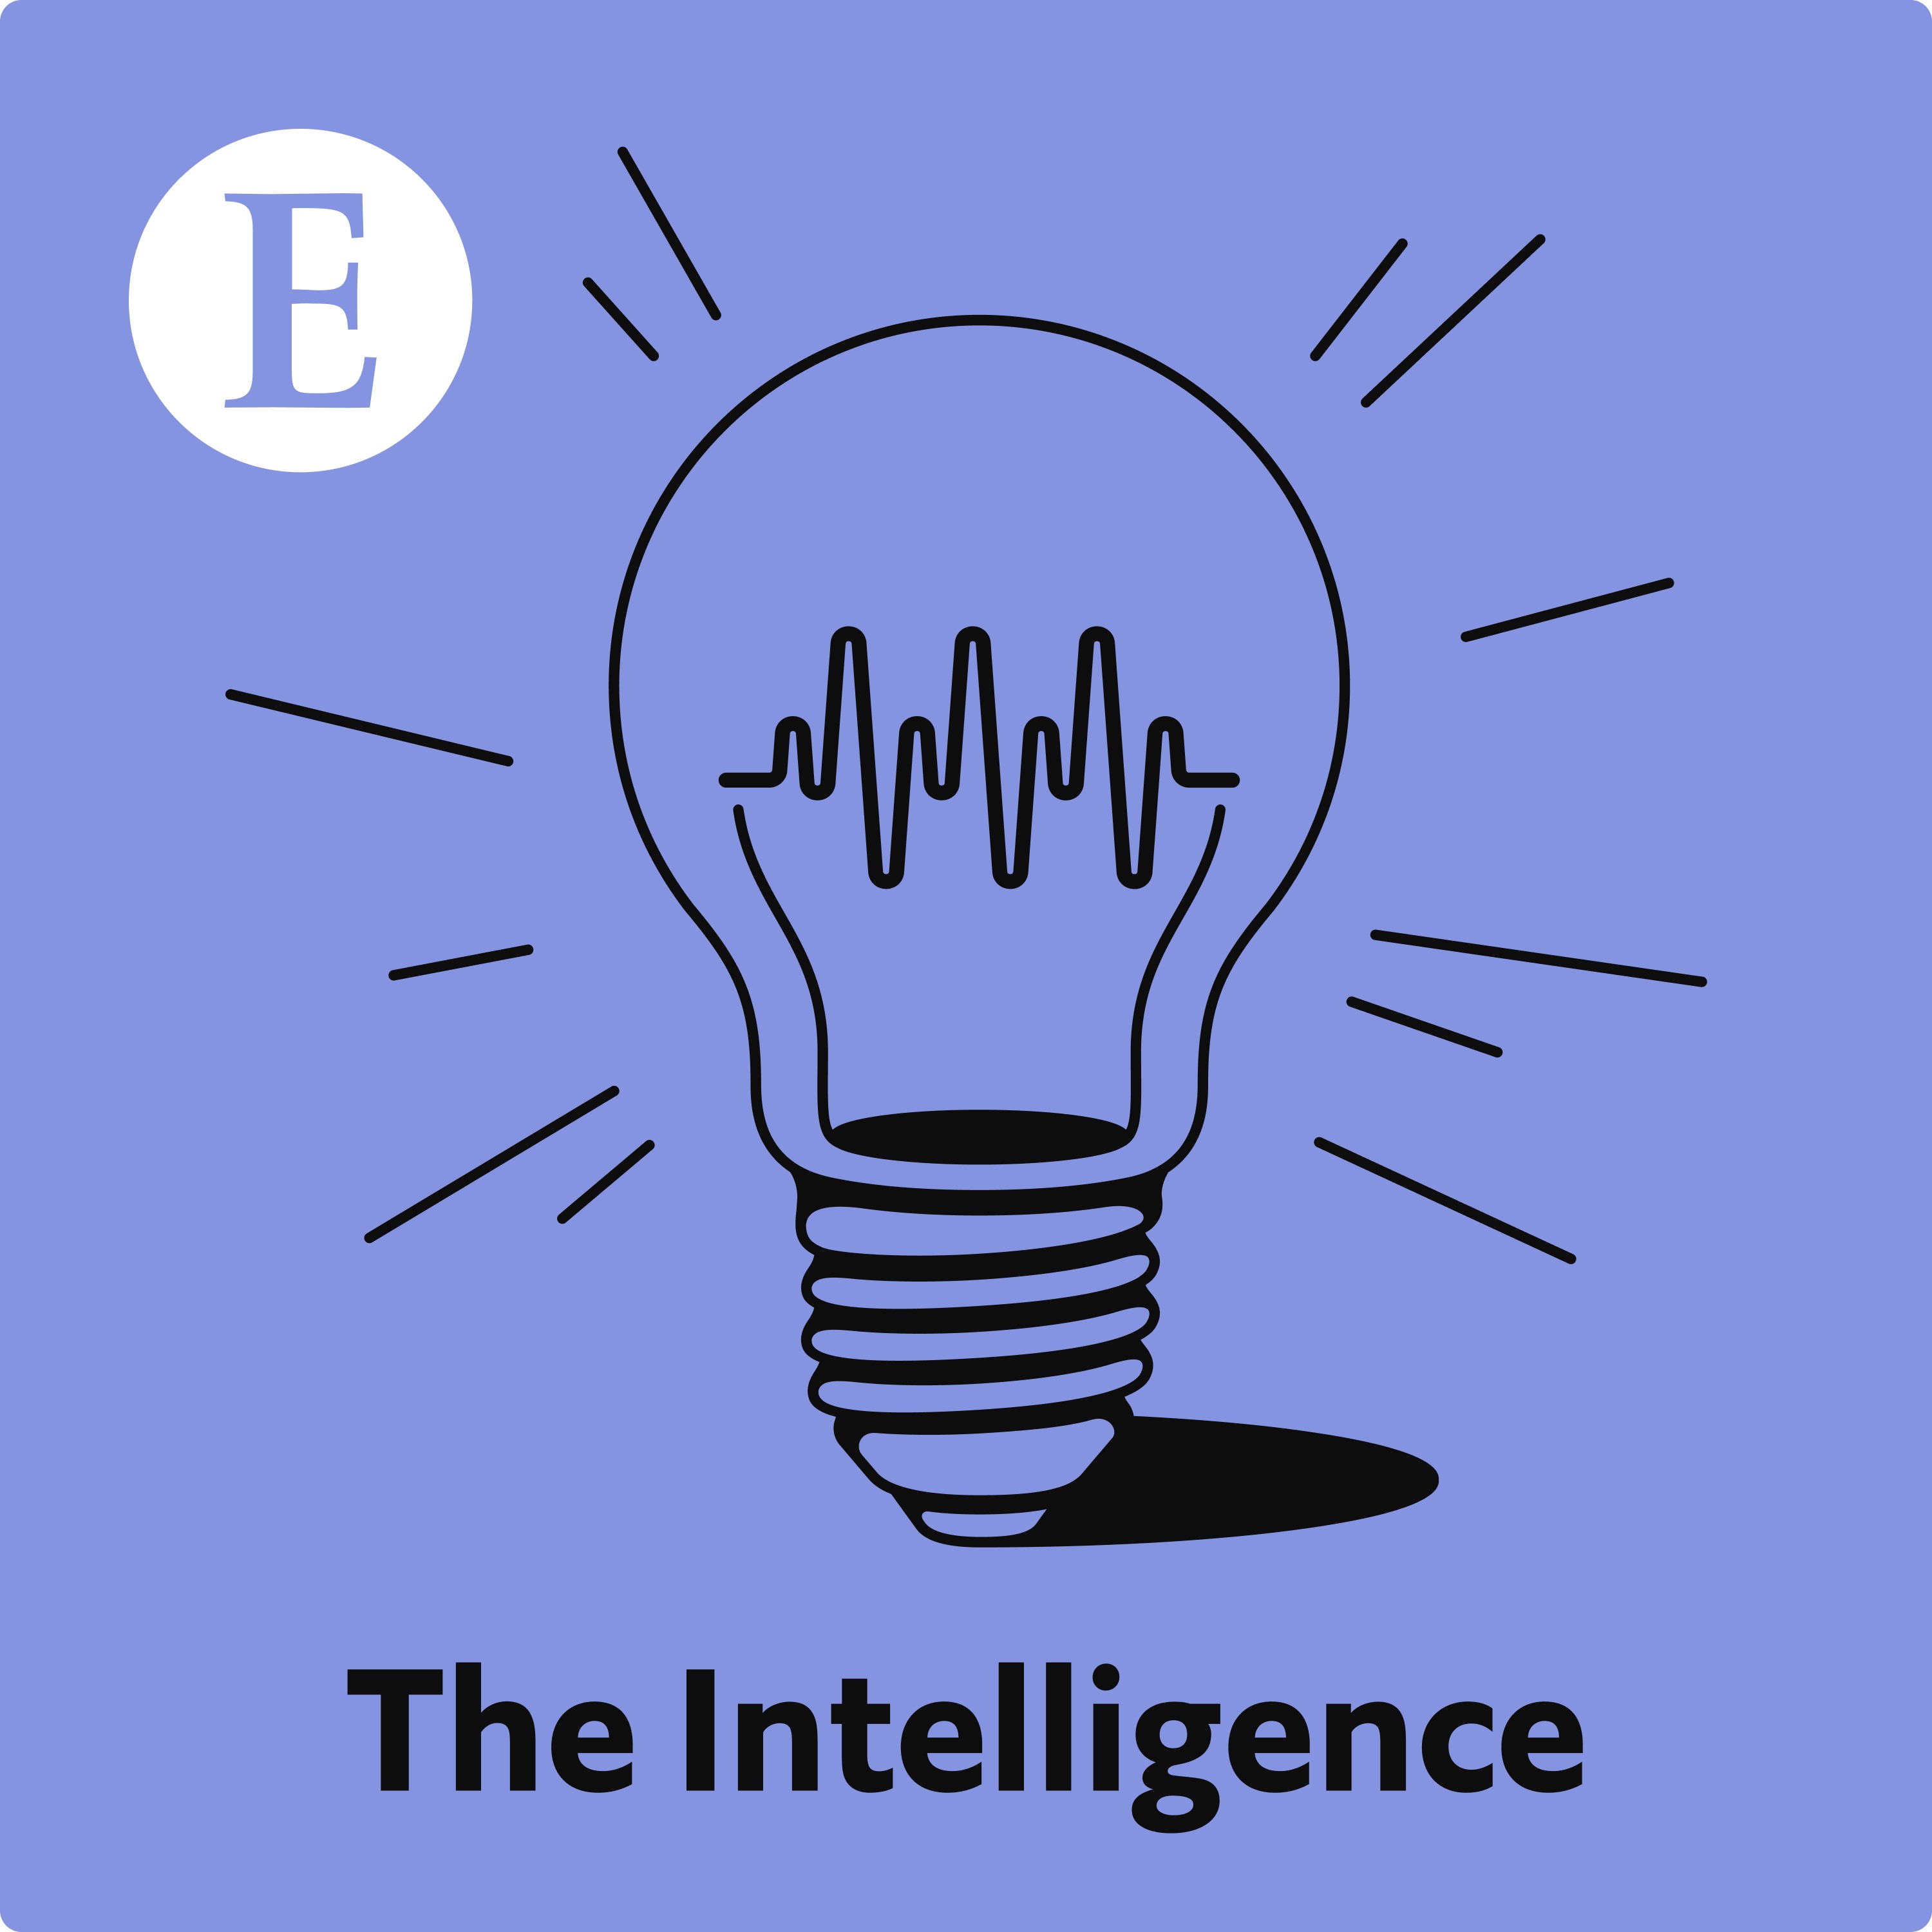 The Intelligence: Going for broker